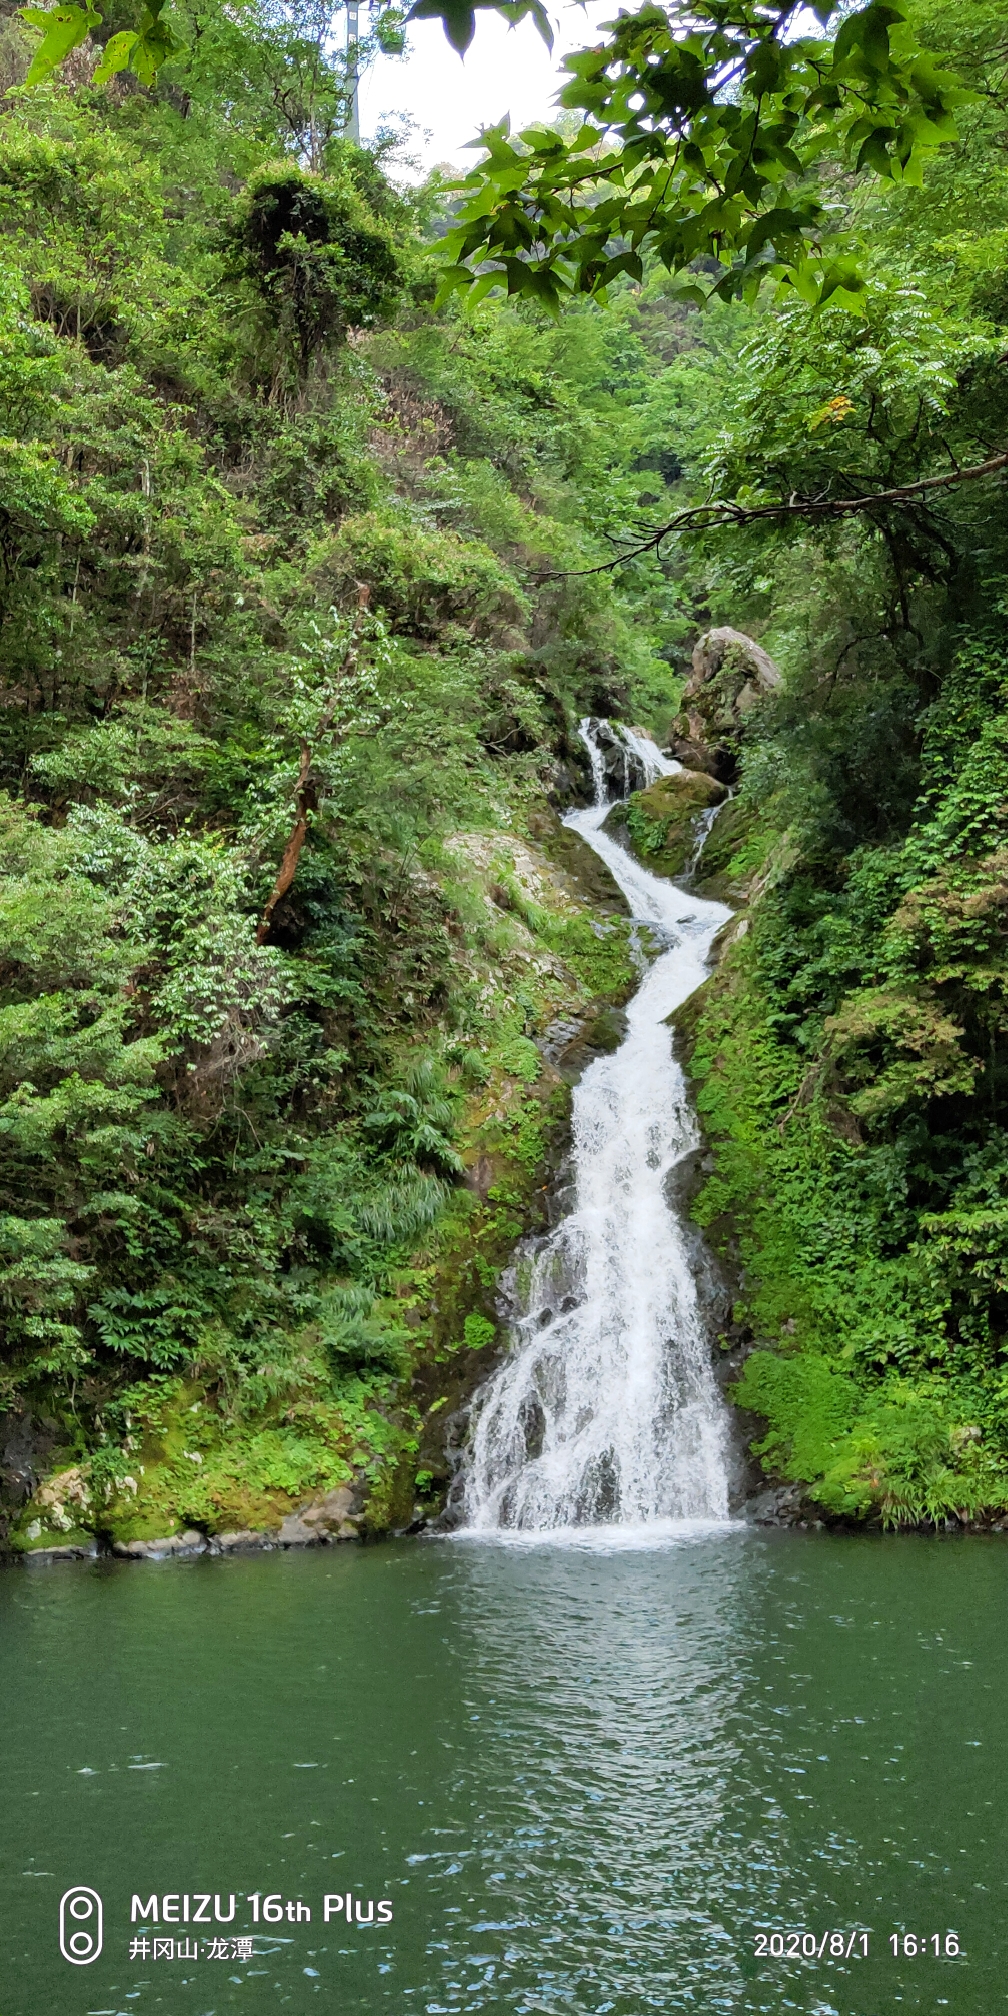 井冈山龙潭胜景-龙潭是以群瀑集聚为显著特色的景区，素有五潭十八瀑之称